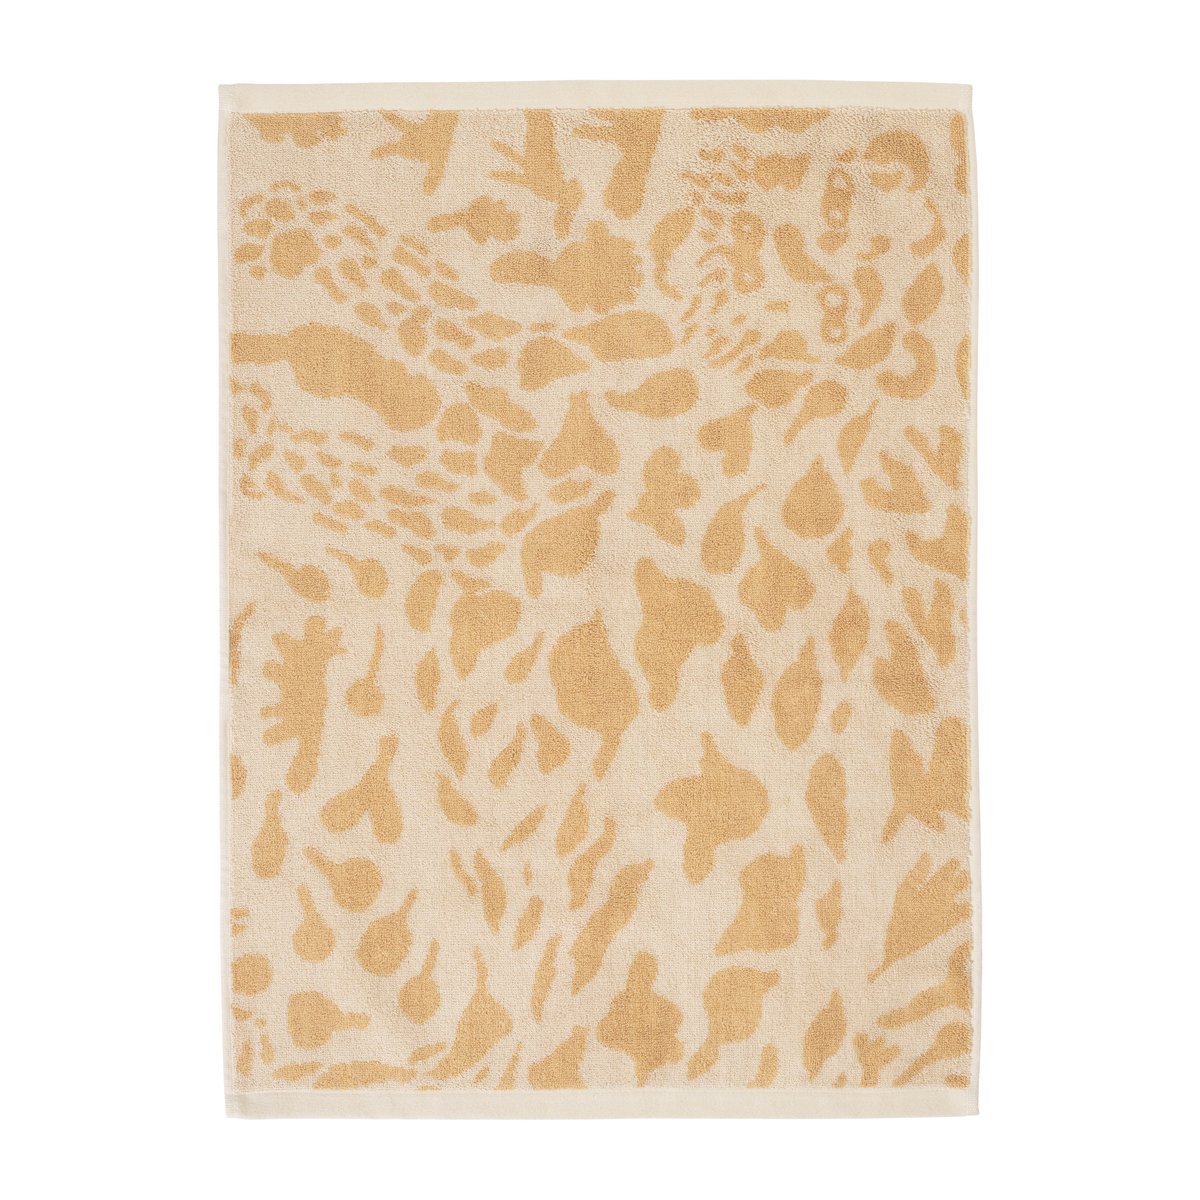 Bilde av Iittala Oiva Toikka Cheetah håndkle 50 x 70 cm Brun